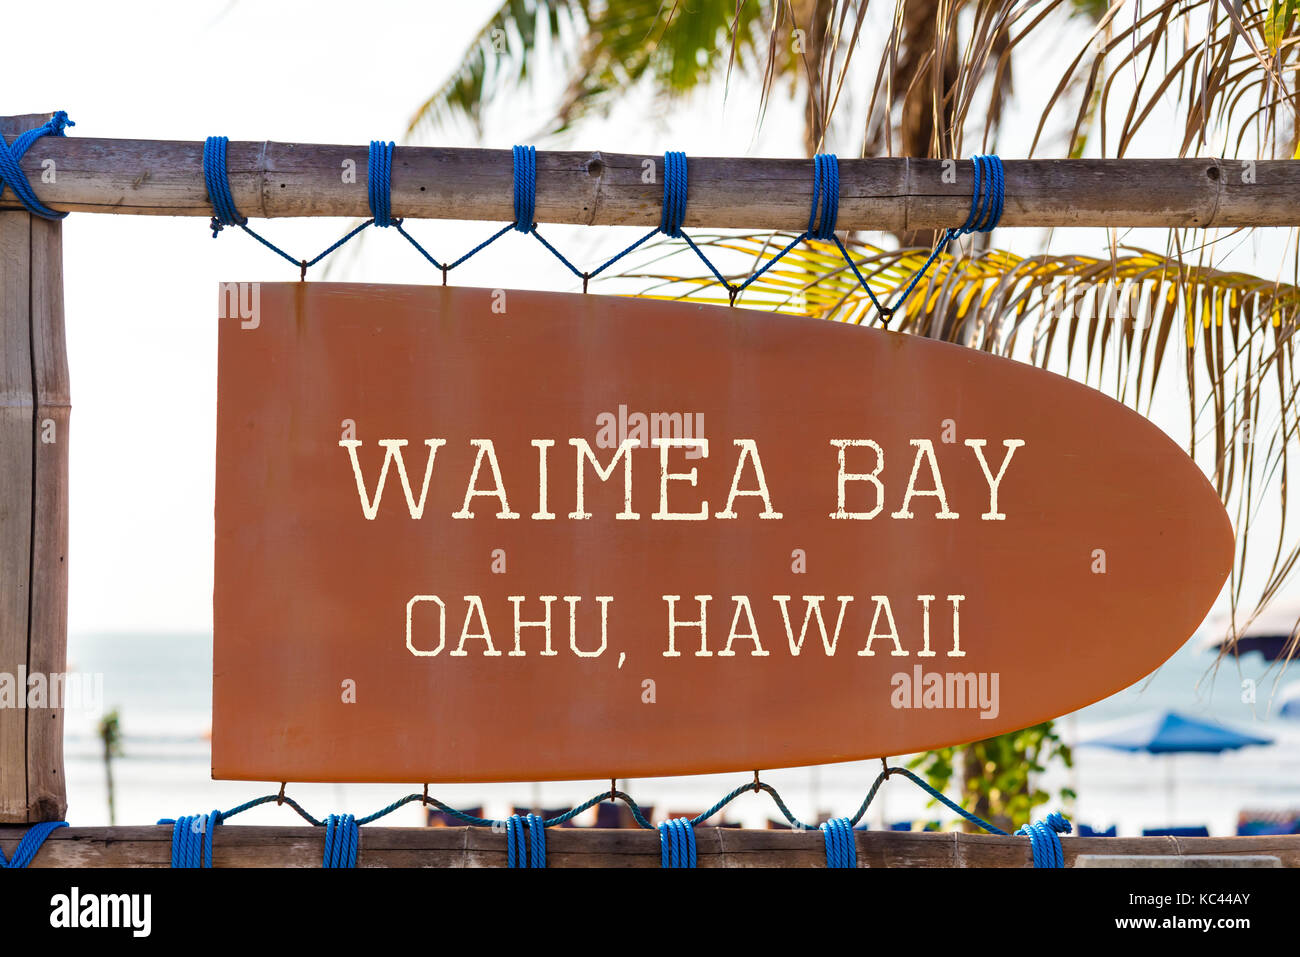 Pancarte vintage orange en forme de surf avec Waimea Bay, Oahu, Hawaii surf spot pour texte et palmier en arrière-plan. Locations et voyage d'hiver Banque D'Images